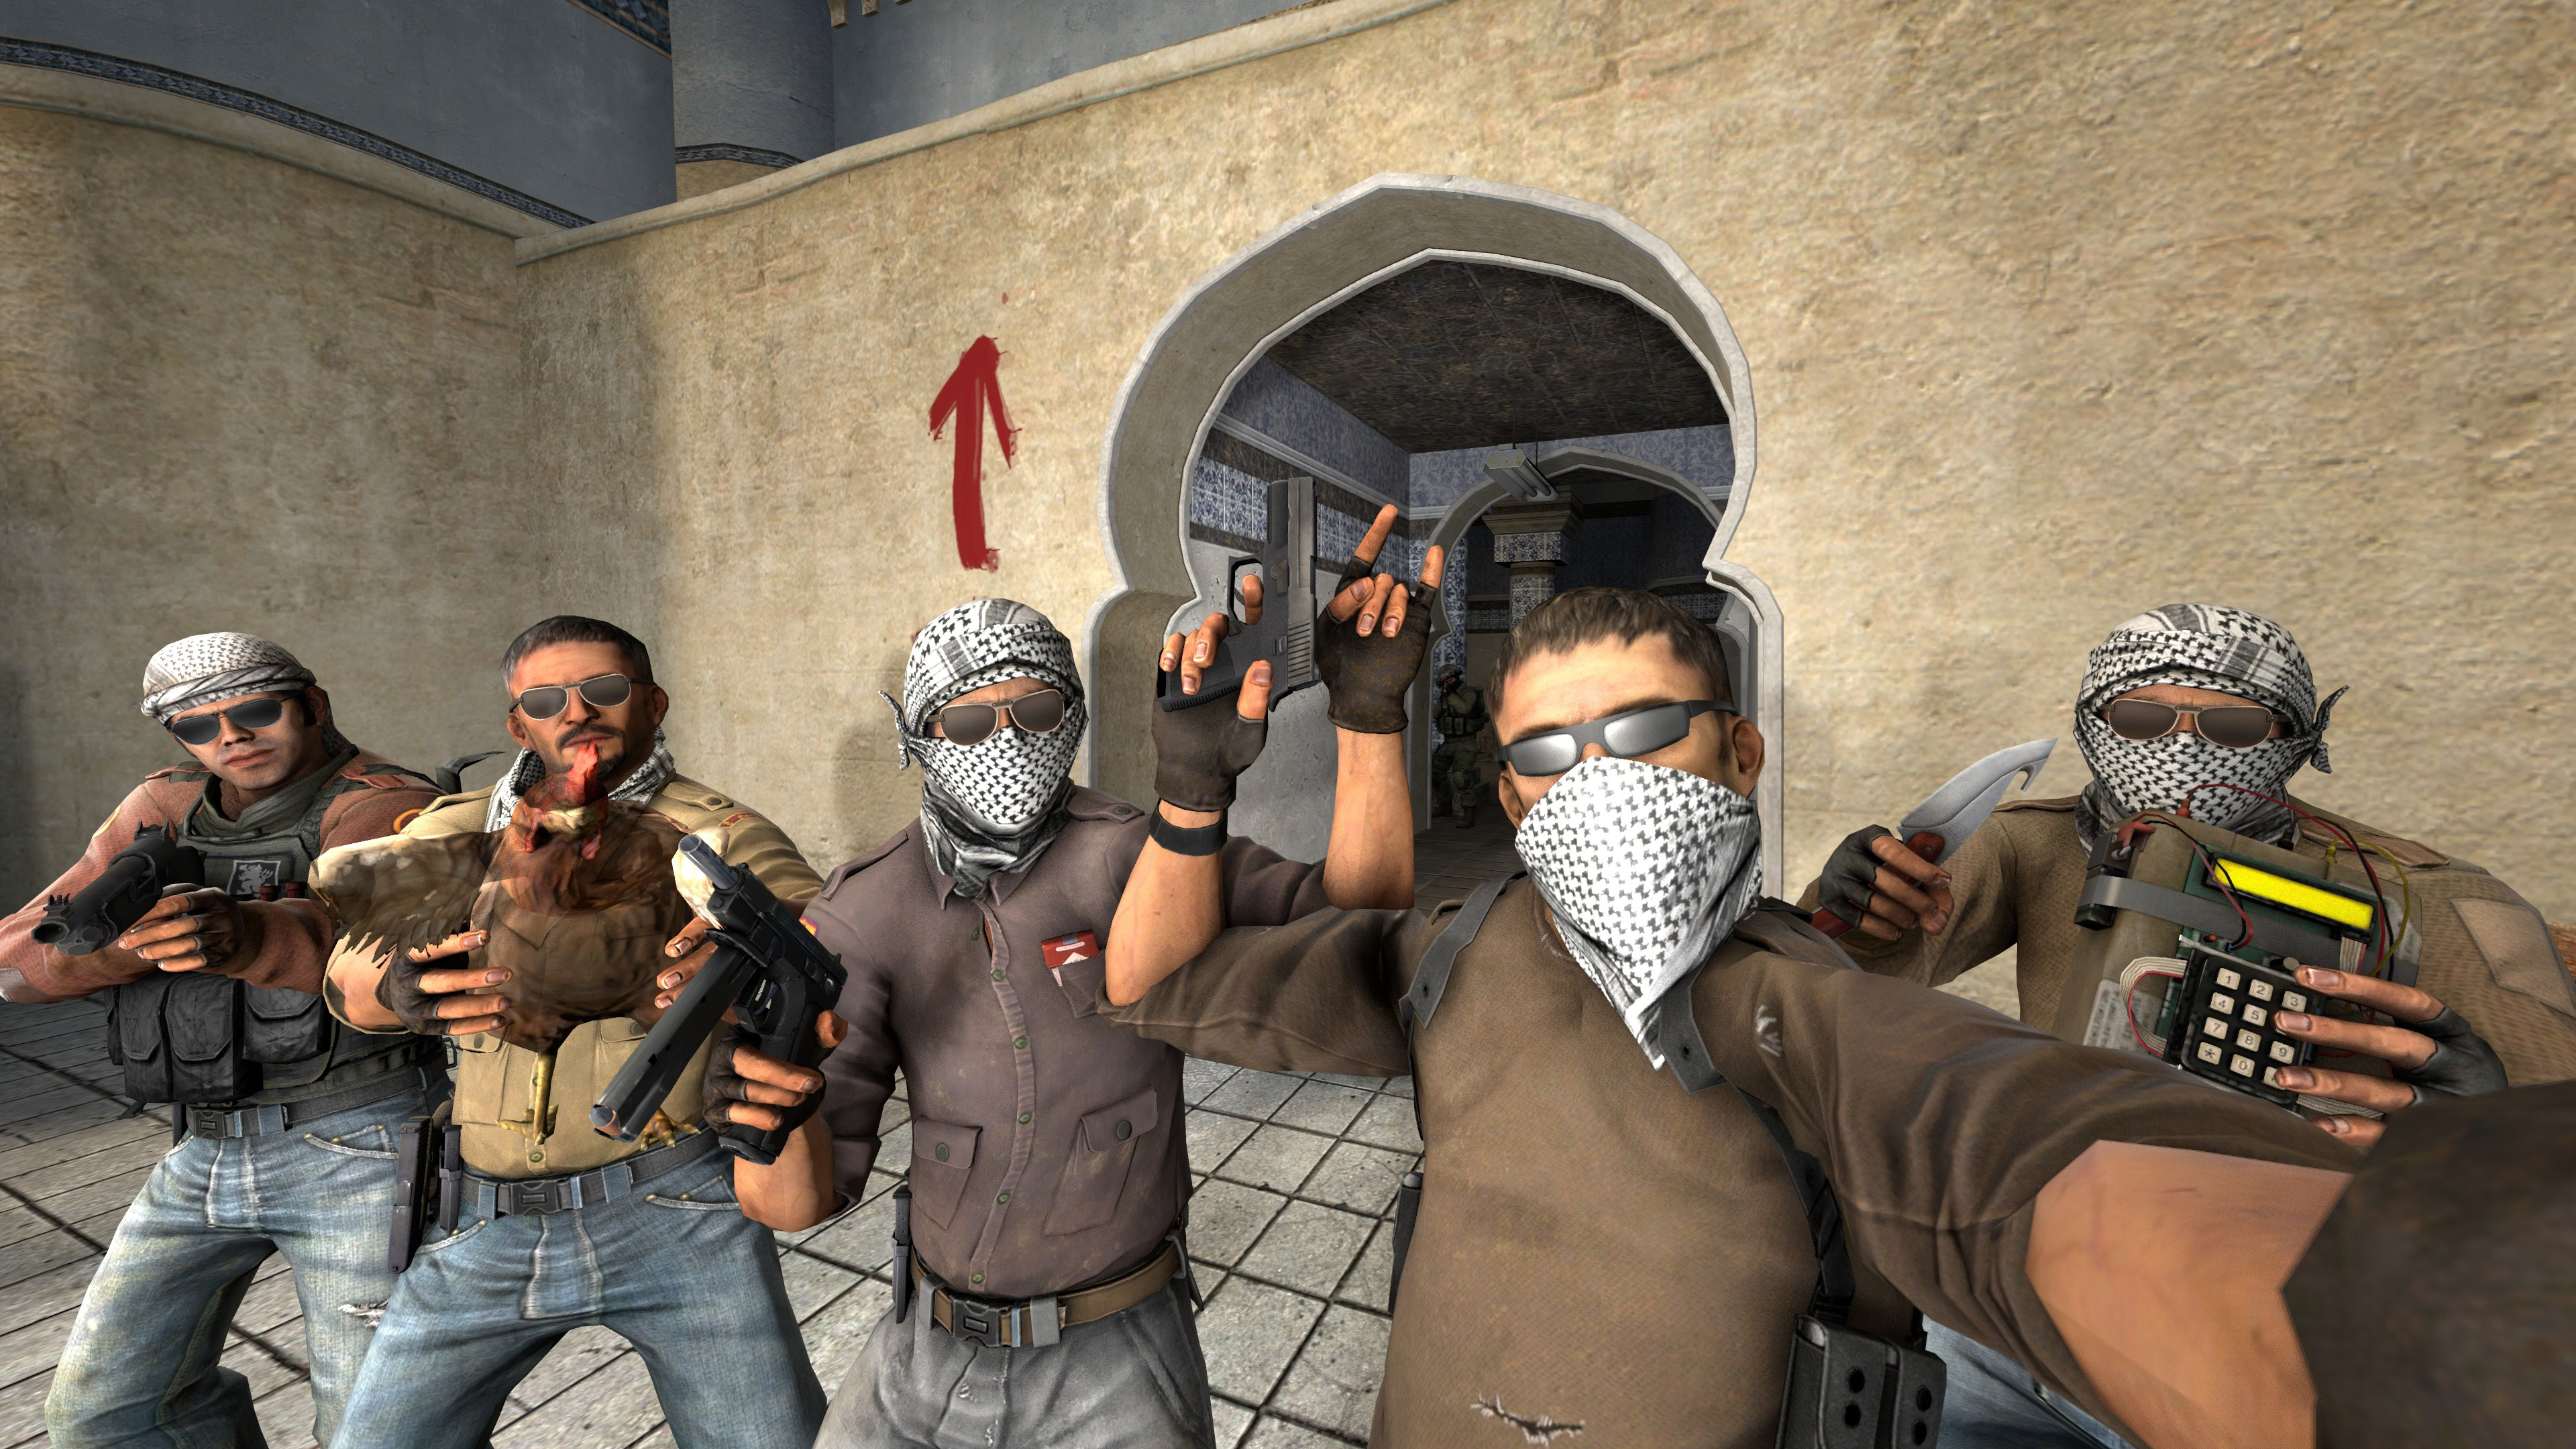 Un'immagine tratta da uno dei videogiochi sparatutto più popolari: Counter-Strike